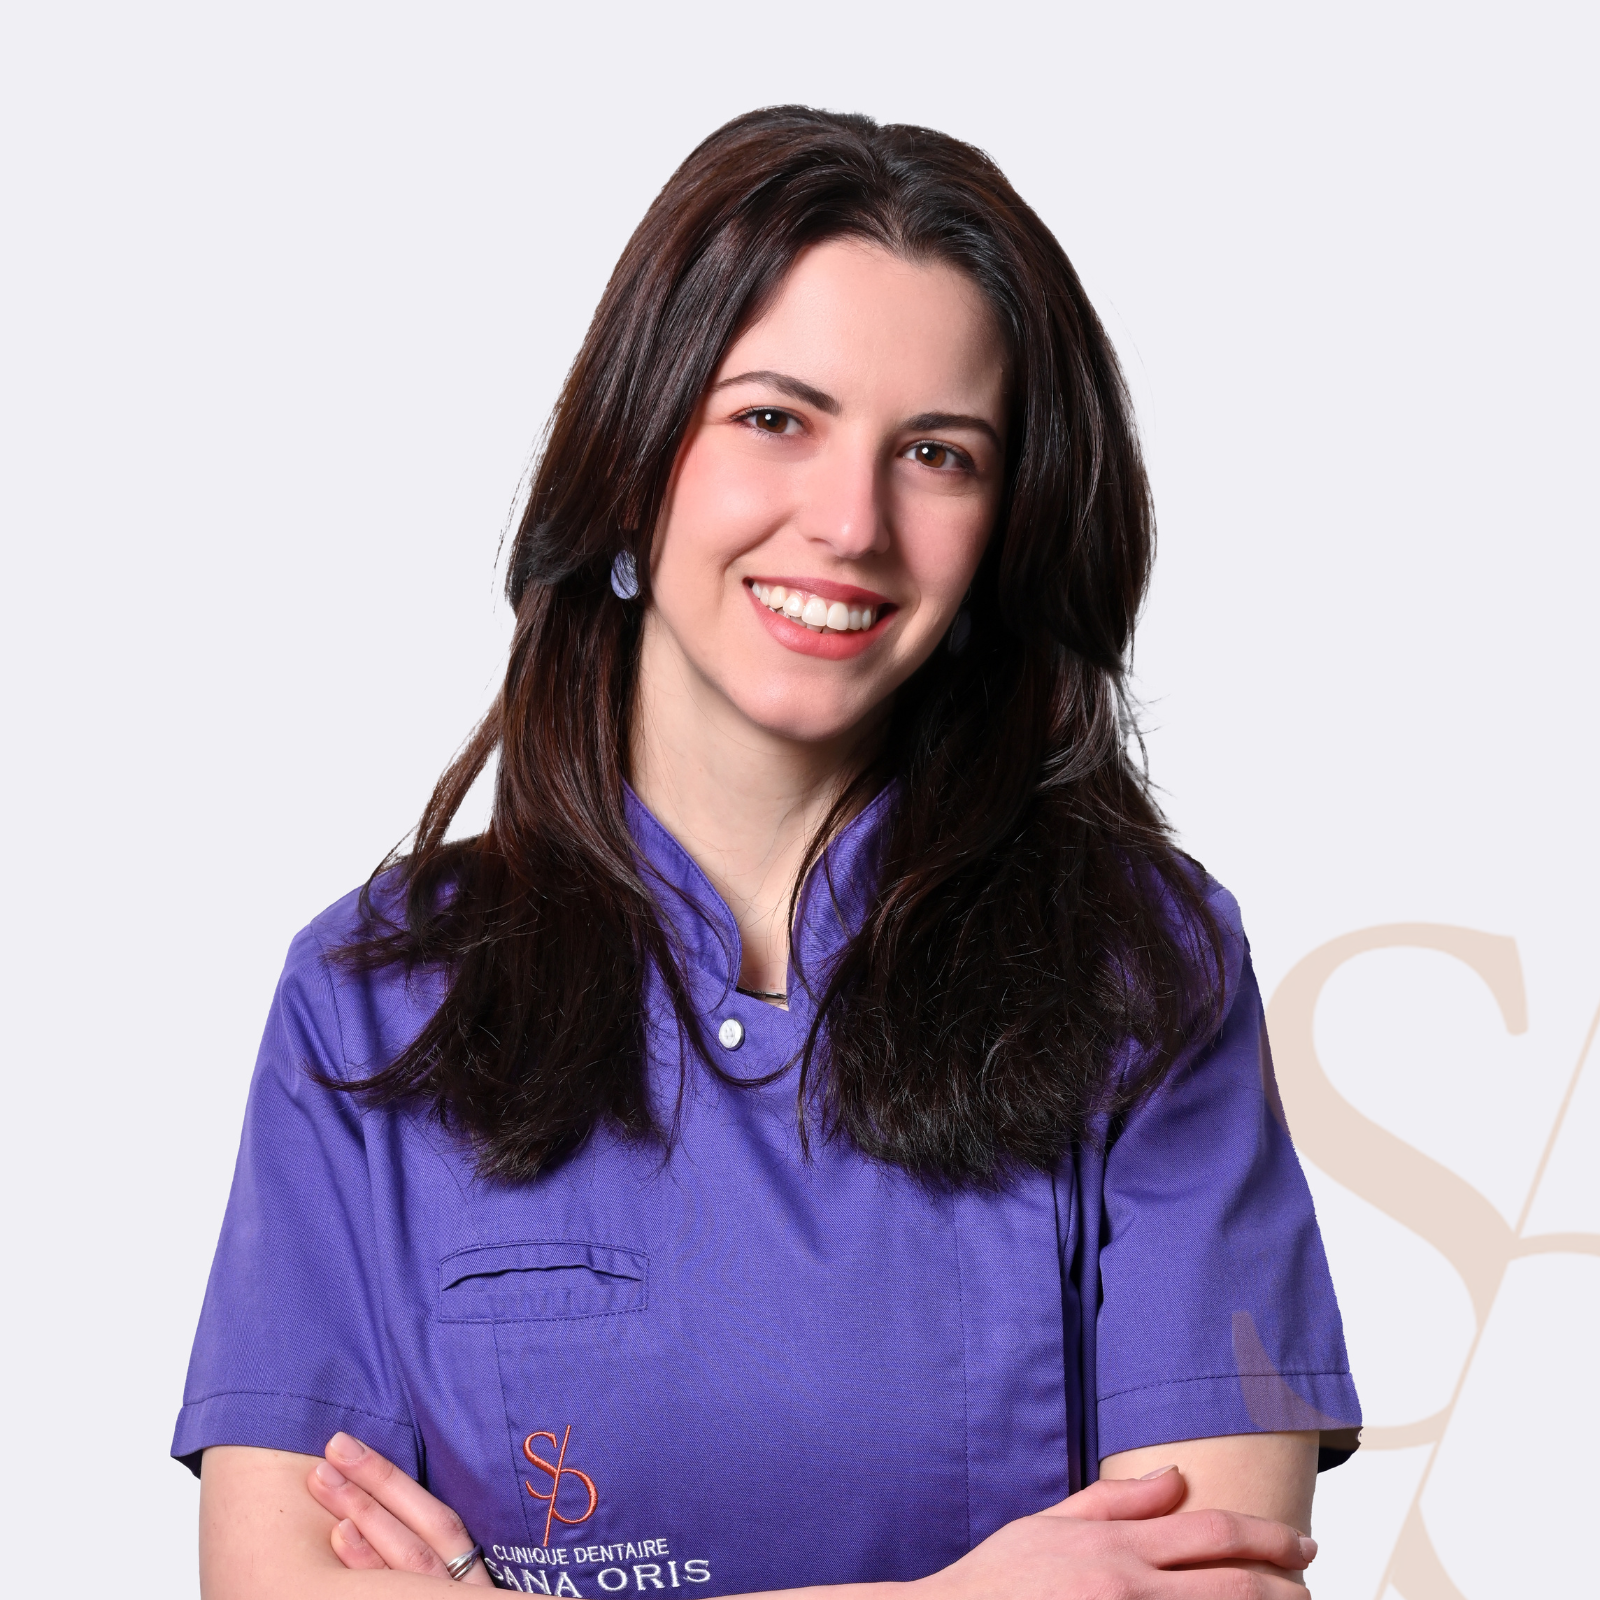 Dr. Marilena Kollimenou | Equipe médicale | Clinique dentaire Sana Oris | Chirurgiens dentistes | Paris 8